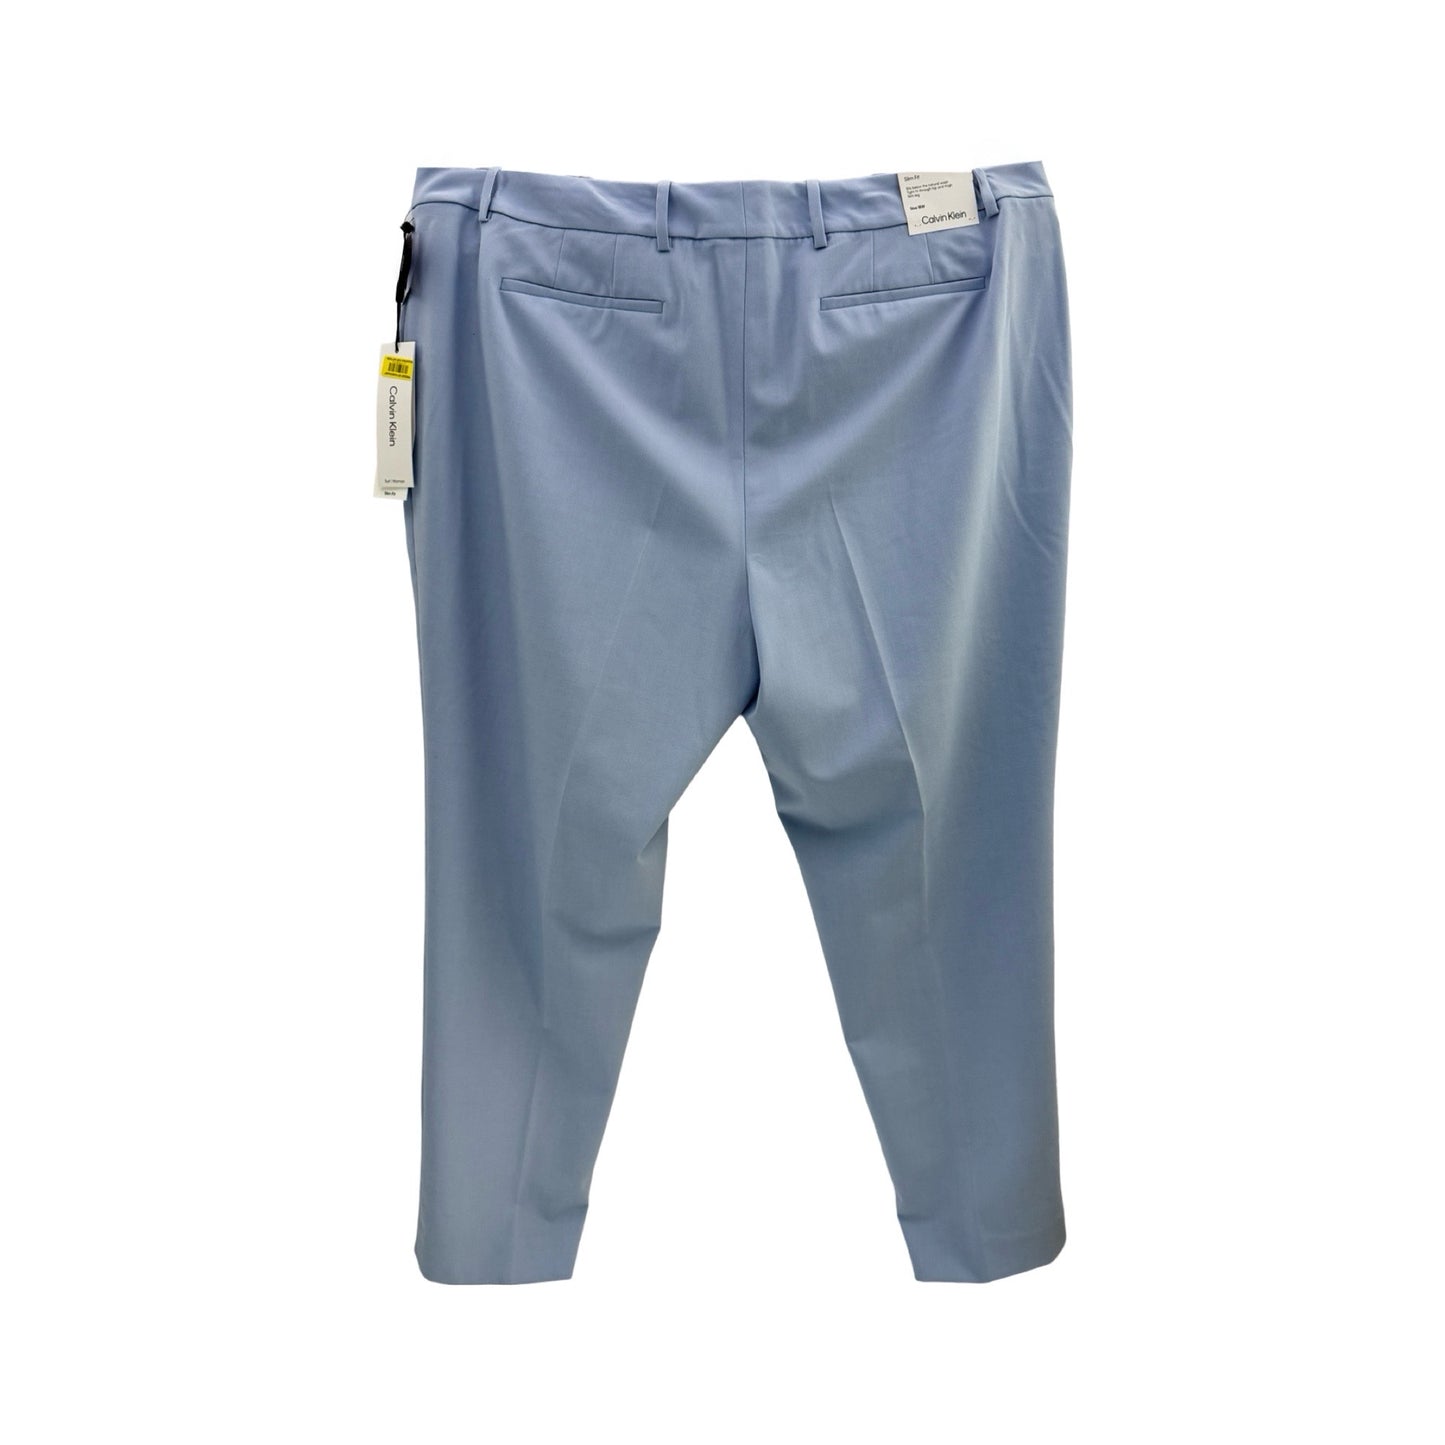 Pants  By Calvin Klein  Size: 18